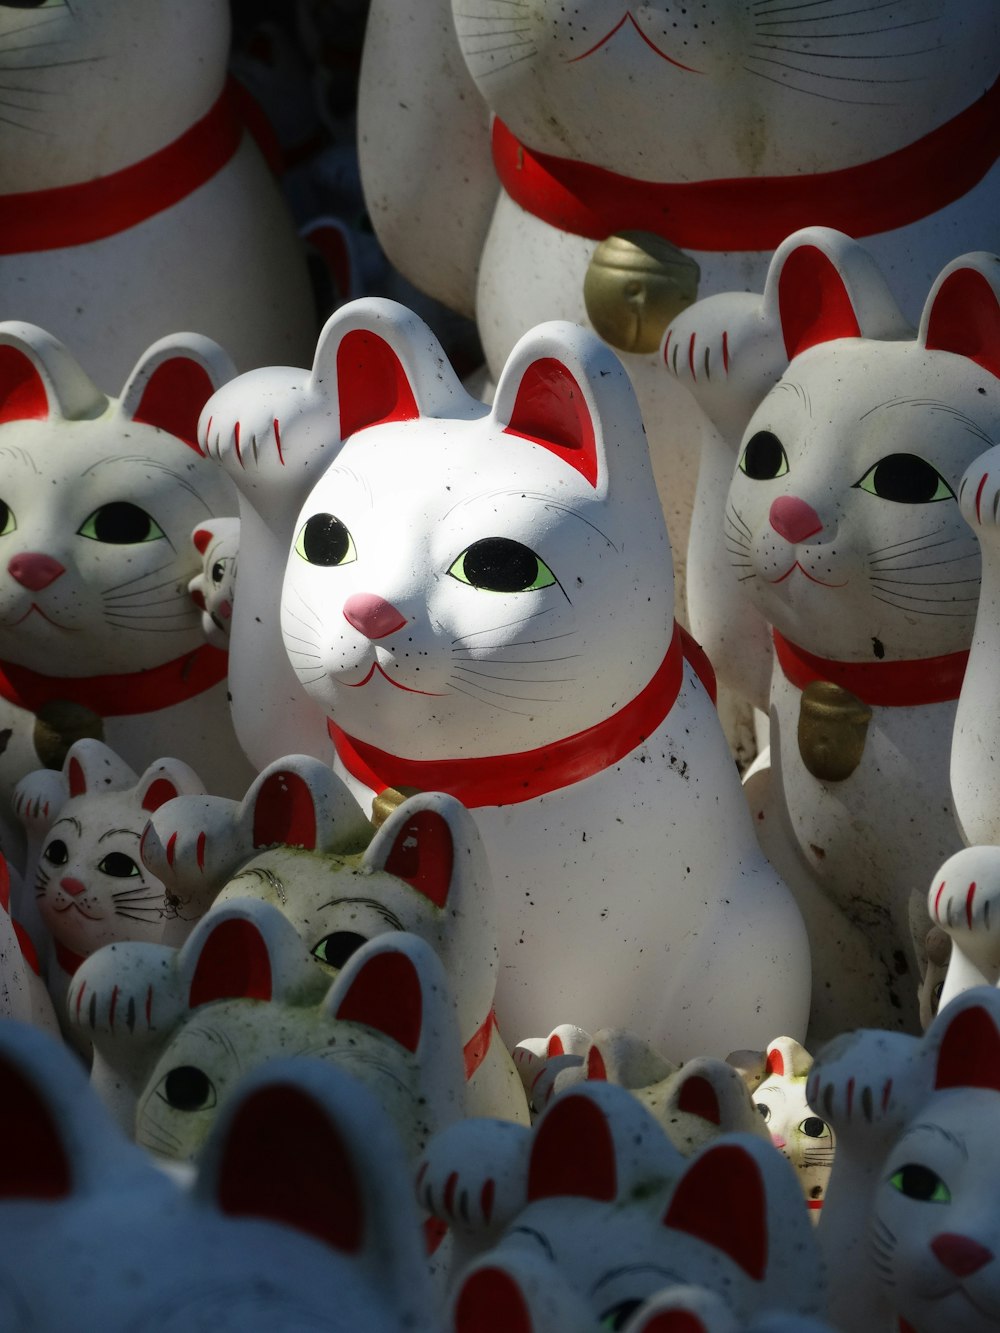 Figuras de gatos de cerámica blanca, roja y amarilla